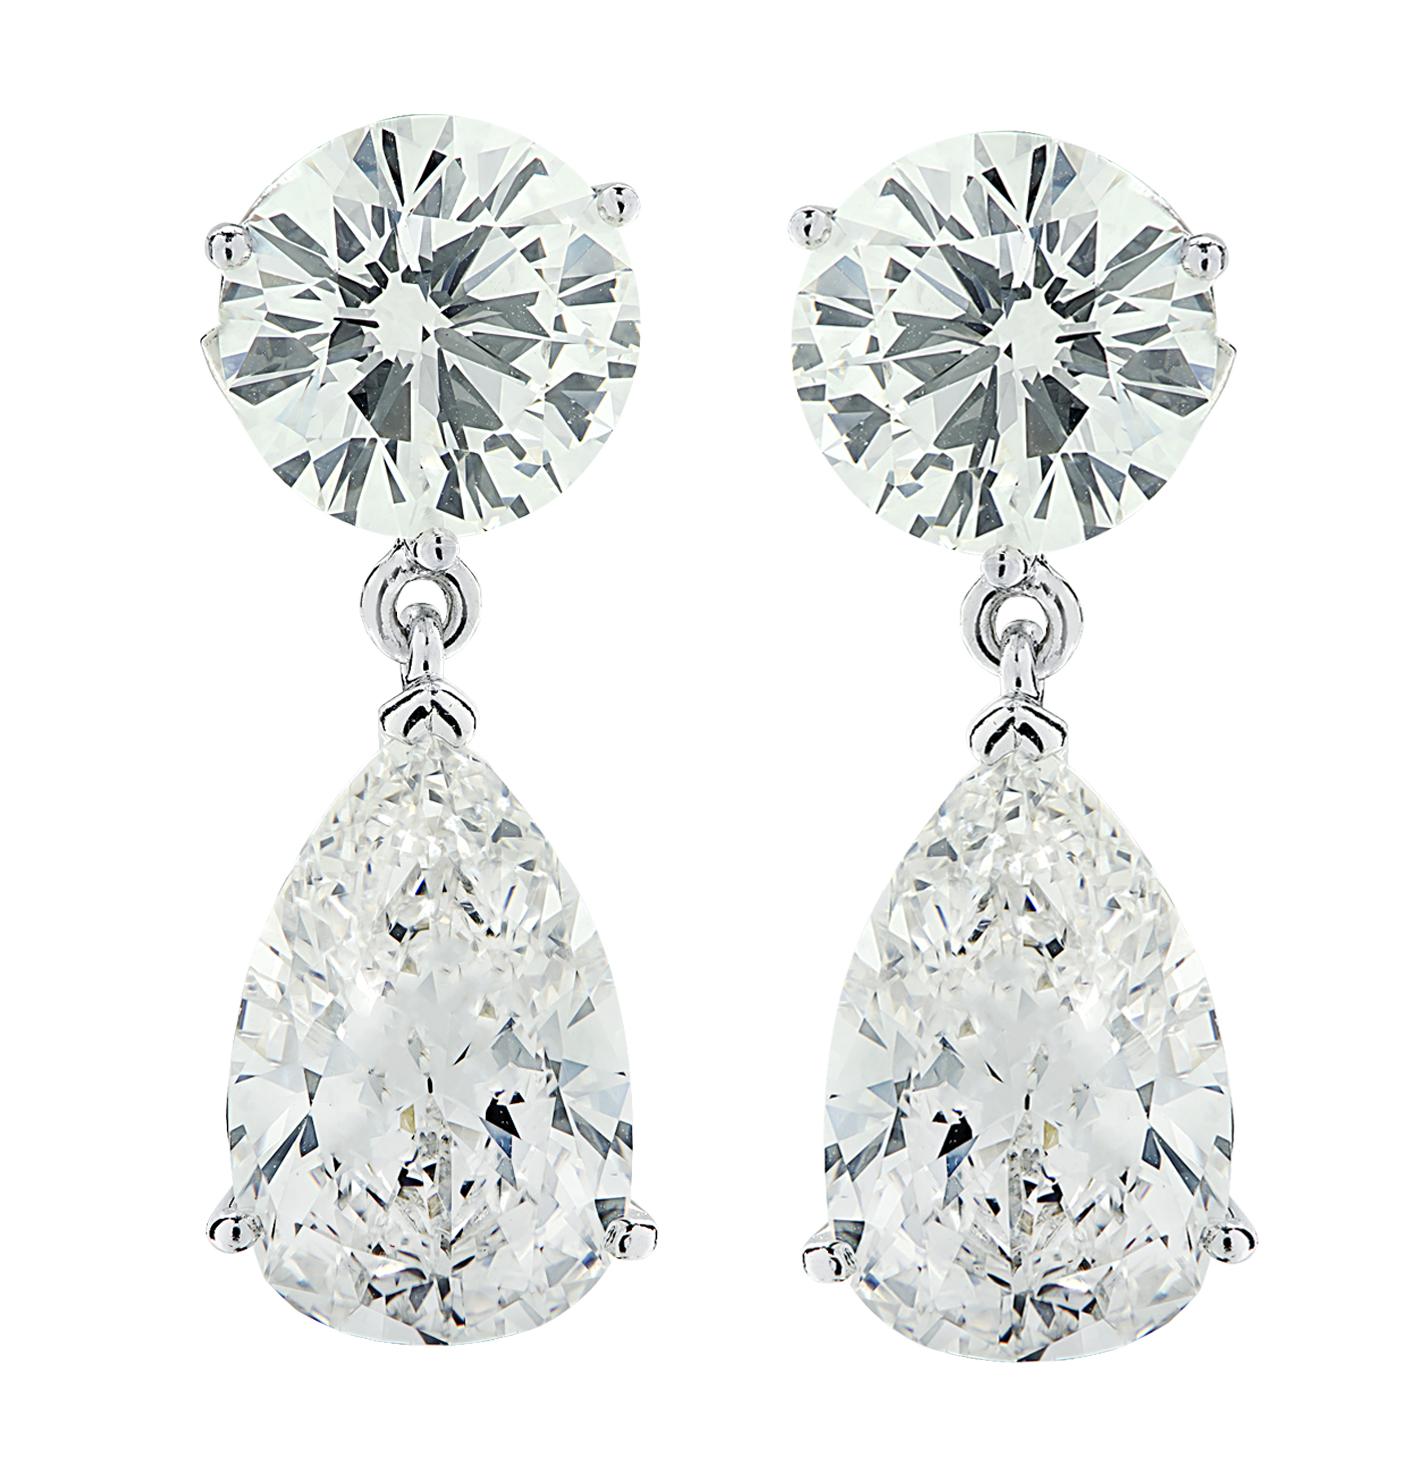 Sensationelle Vivid Diamonds Dangle-Ohrringe aus Platin mit 2 GIA-zertifizierten runden Diamanten im Brillantschliff mit einem Gesamtgewicht von 6,05 Karat, Farbe G-H, Reinheit VS1-SI1 und 2 GIA-zertifizierten birnenförmigen Diamanten mit einem